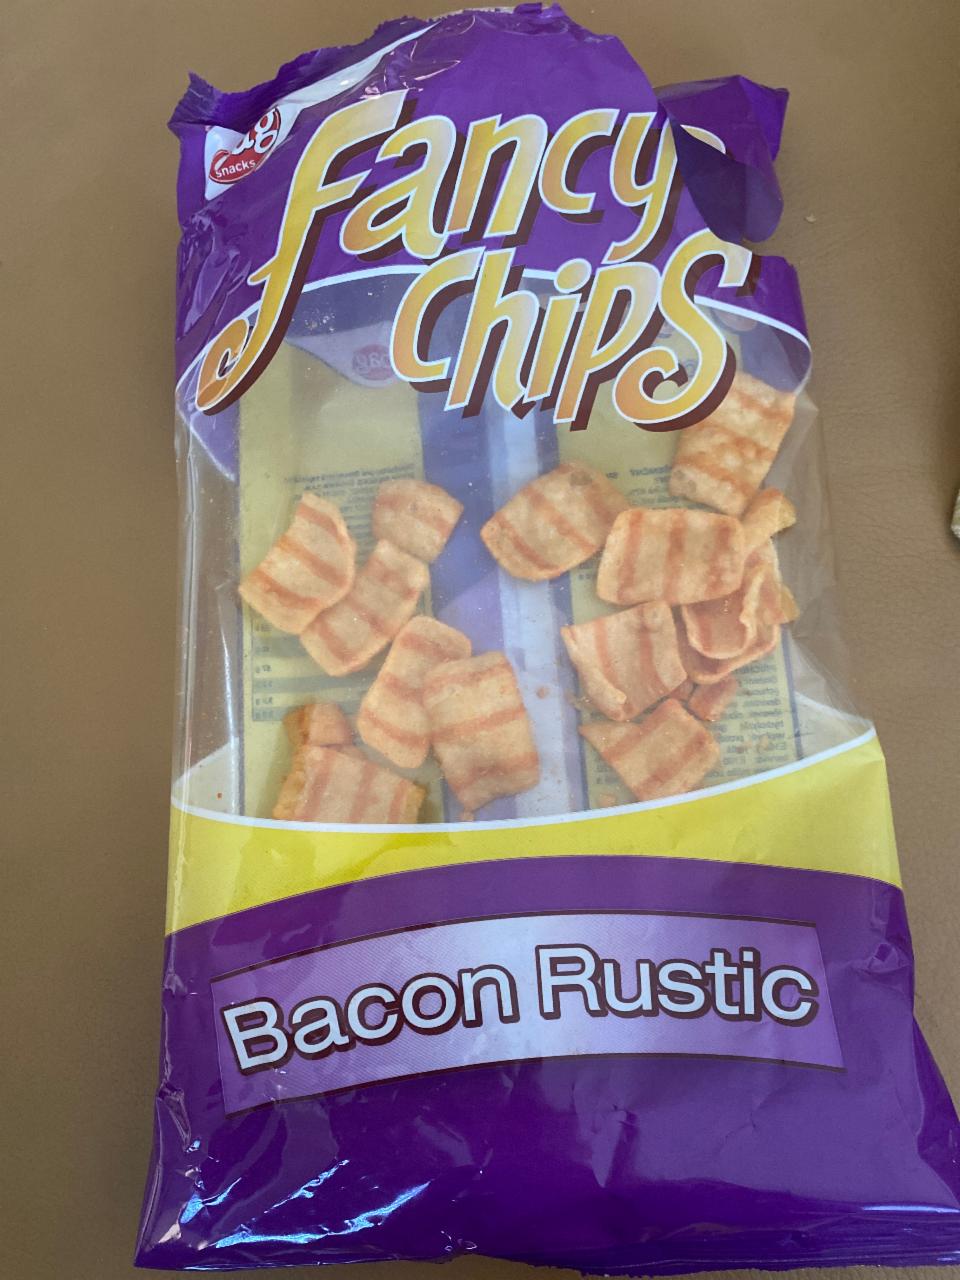 Fotografie - Fancy Chips Bacon Rustic Bag